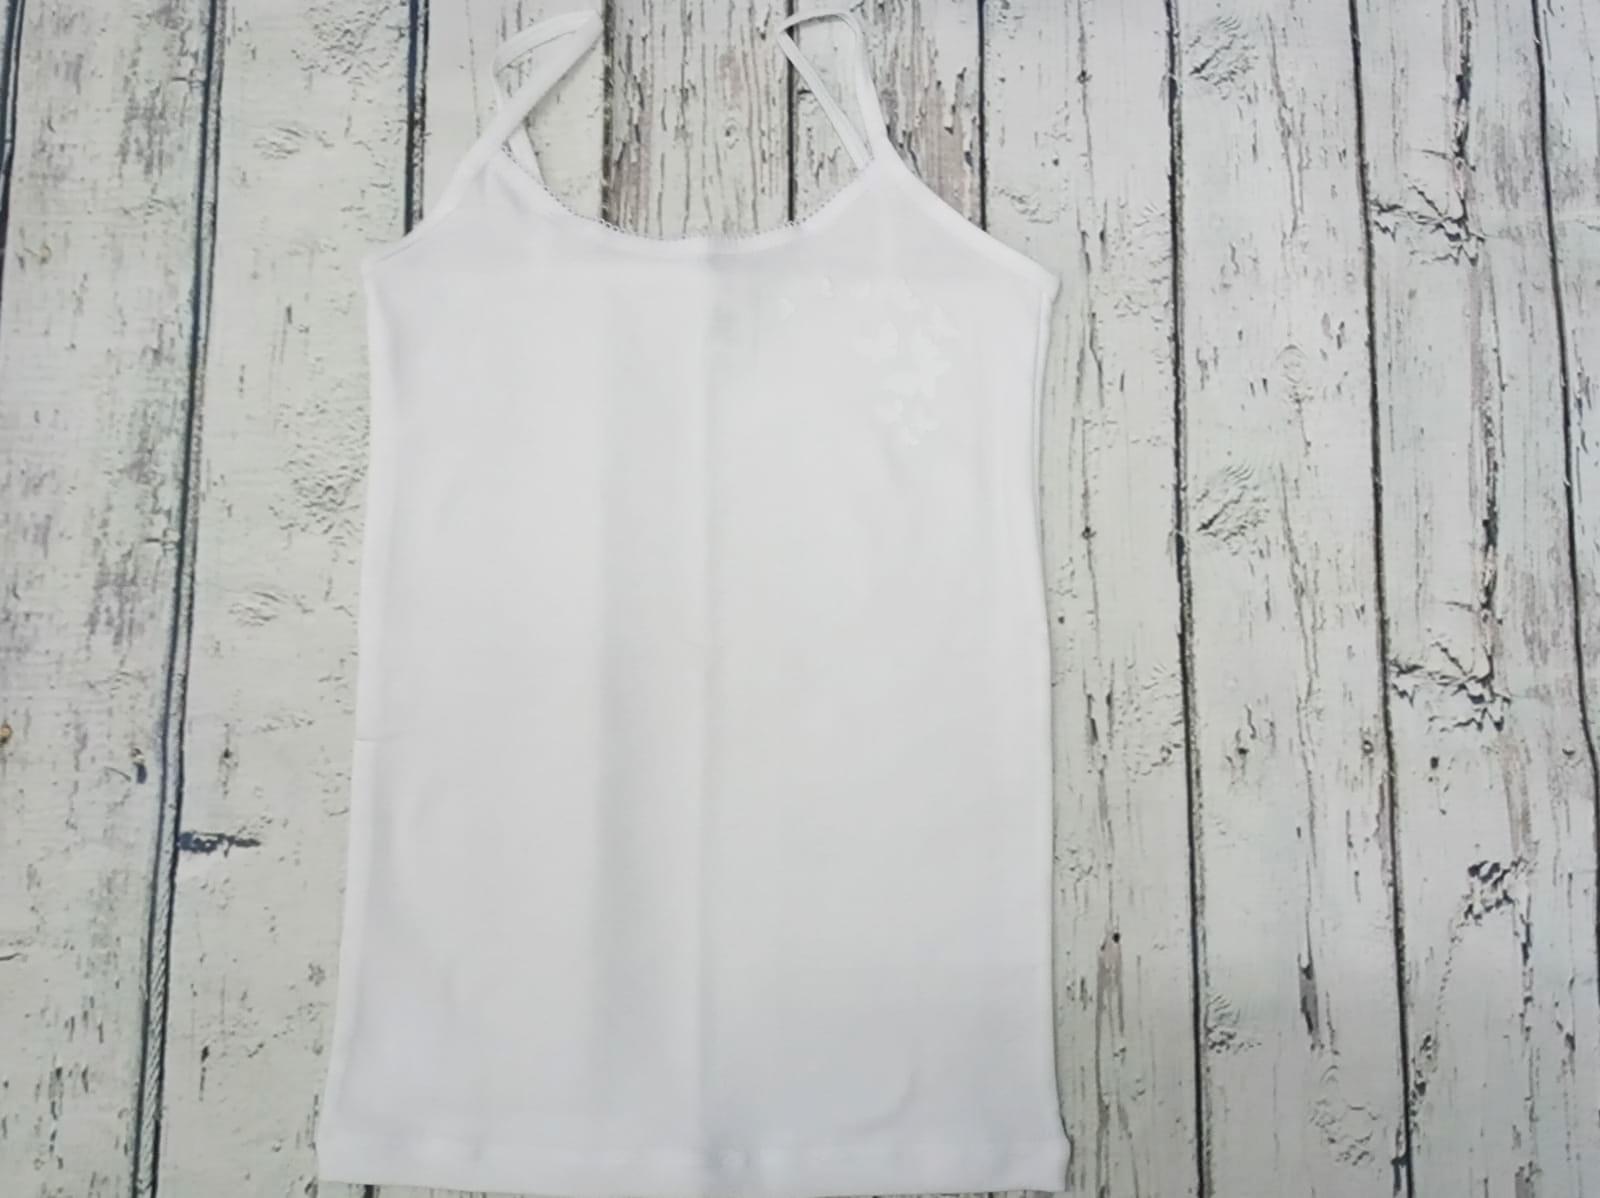 Camiseta interior blanca de niña de tirantes " Mariposas"  de Pera.